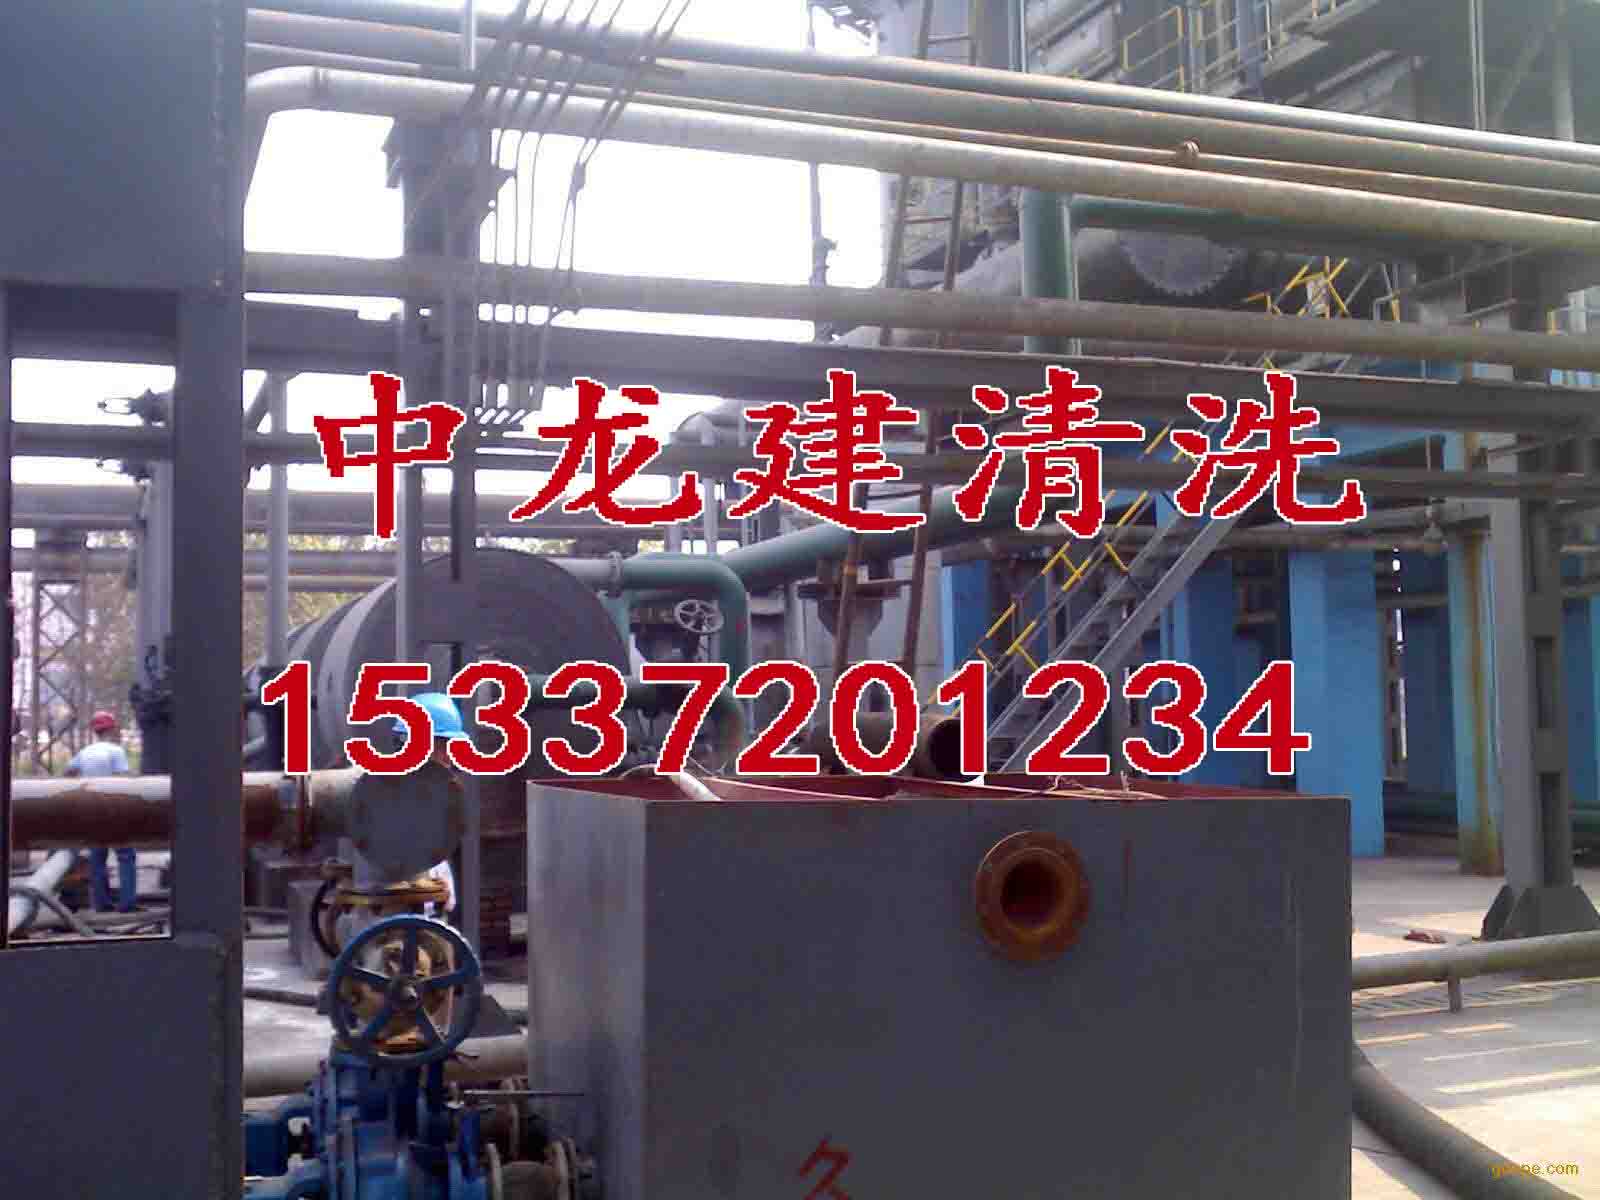 上海冷却器清洗公司